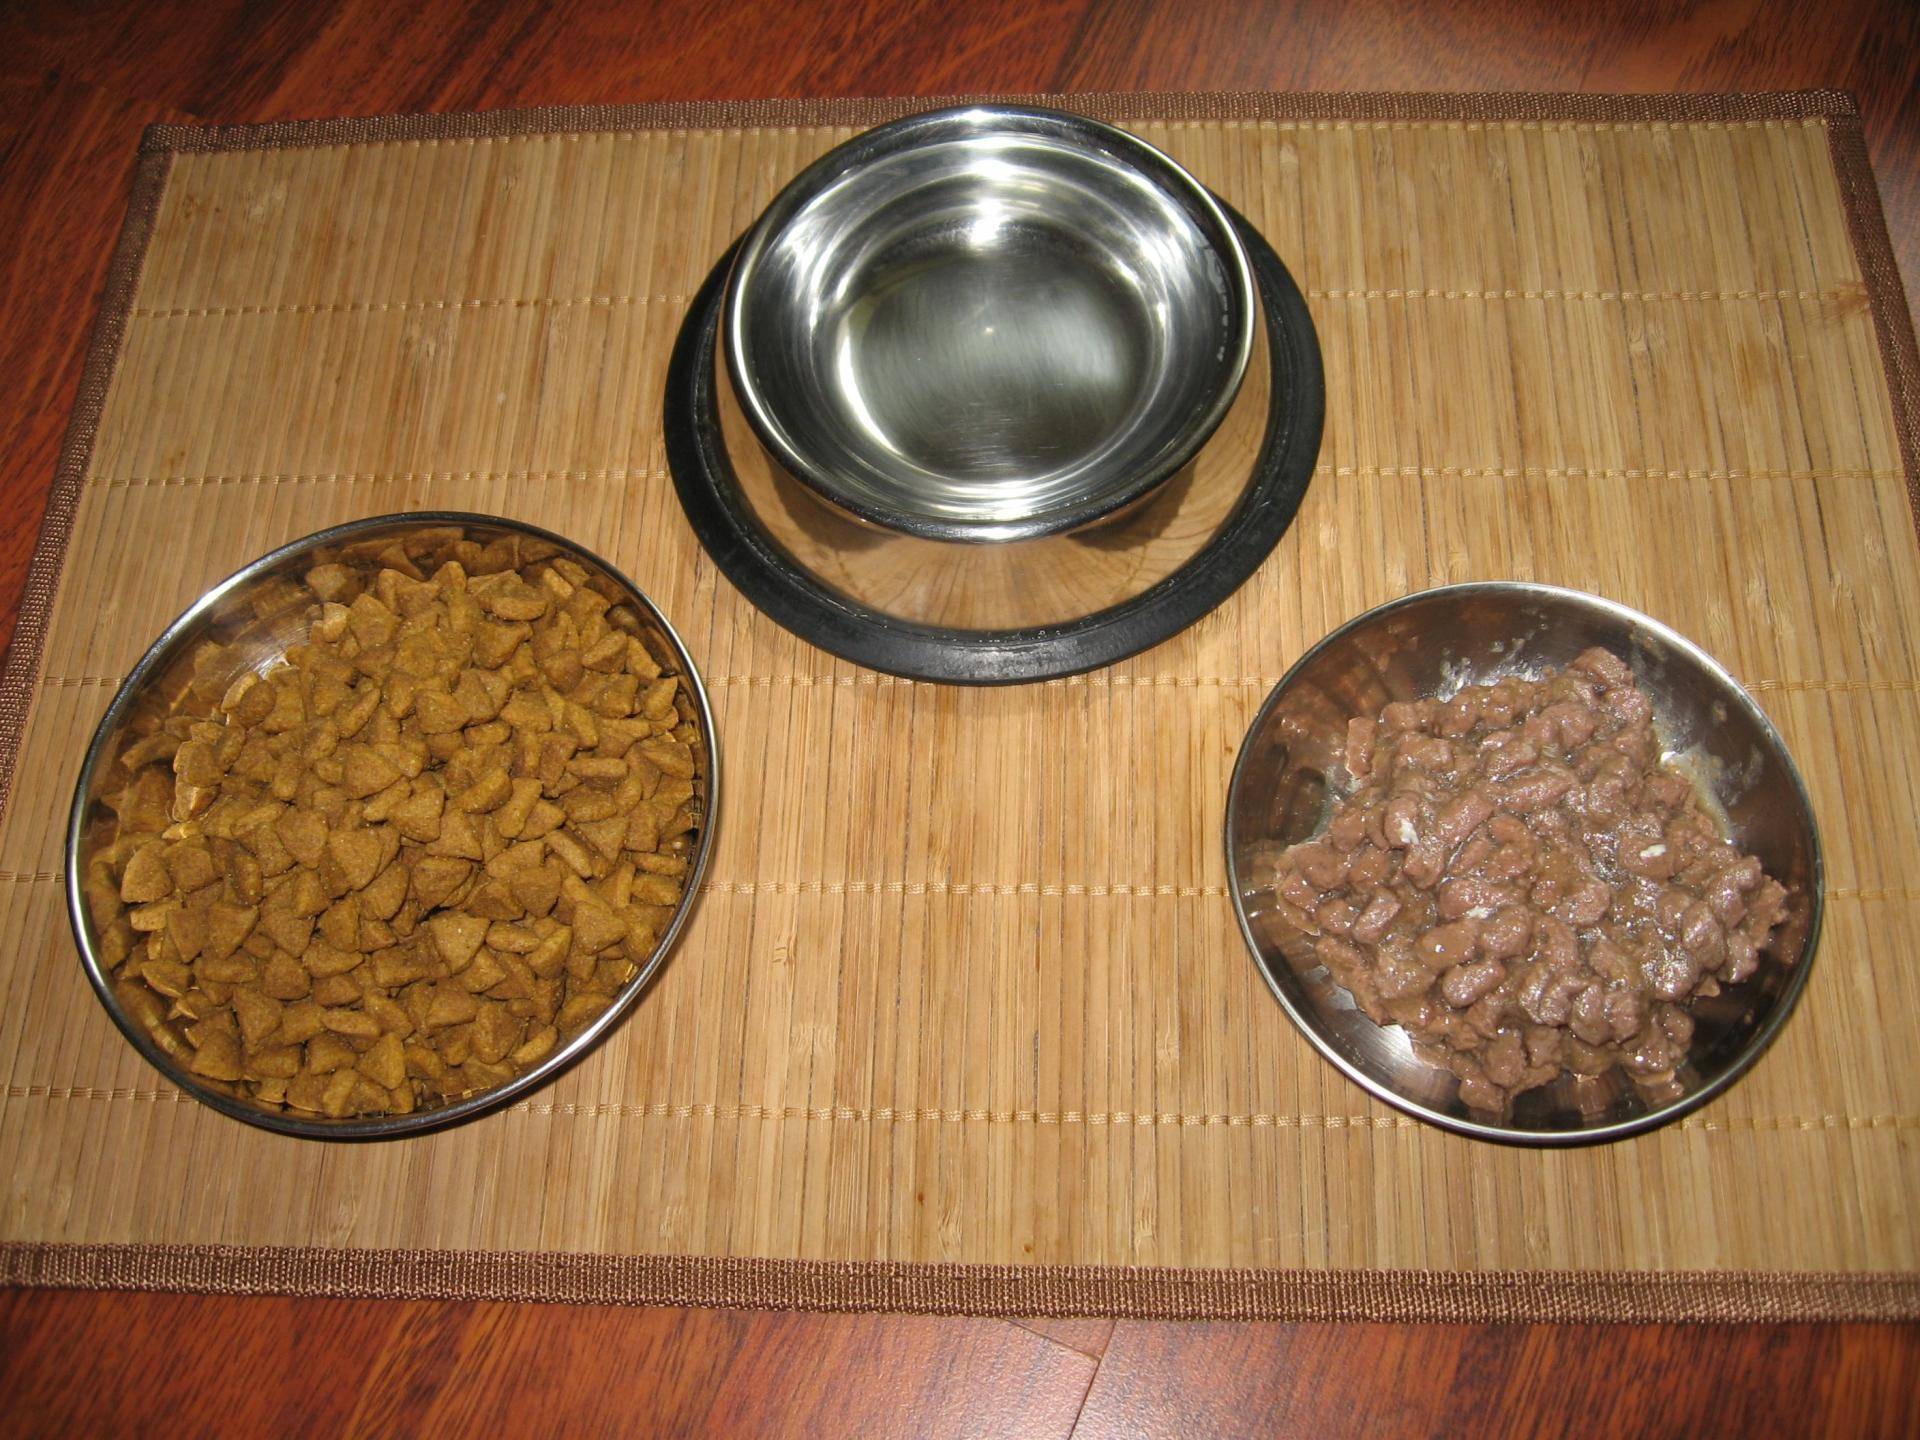 Можно ли смешивать сухой и влажный корм. Натуральное питание для котов миска. Размоченный сухой корм. Миски с кормом натуралка. Натуралка для собак в миске.